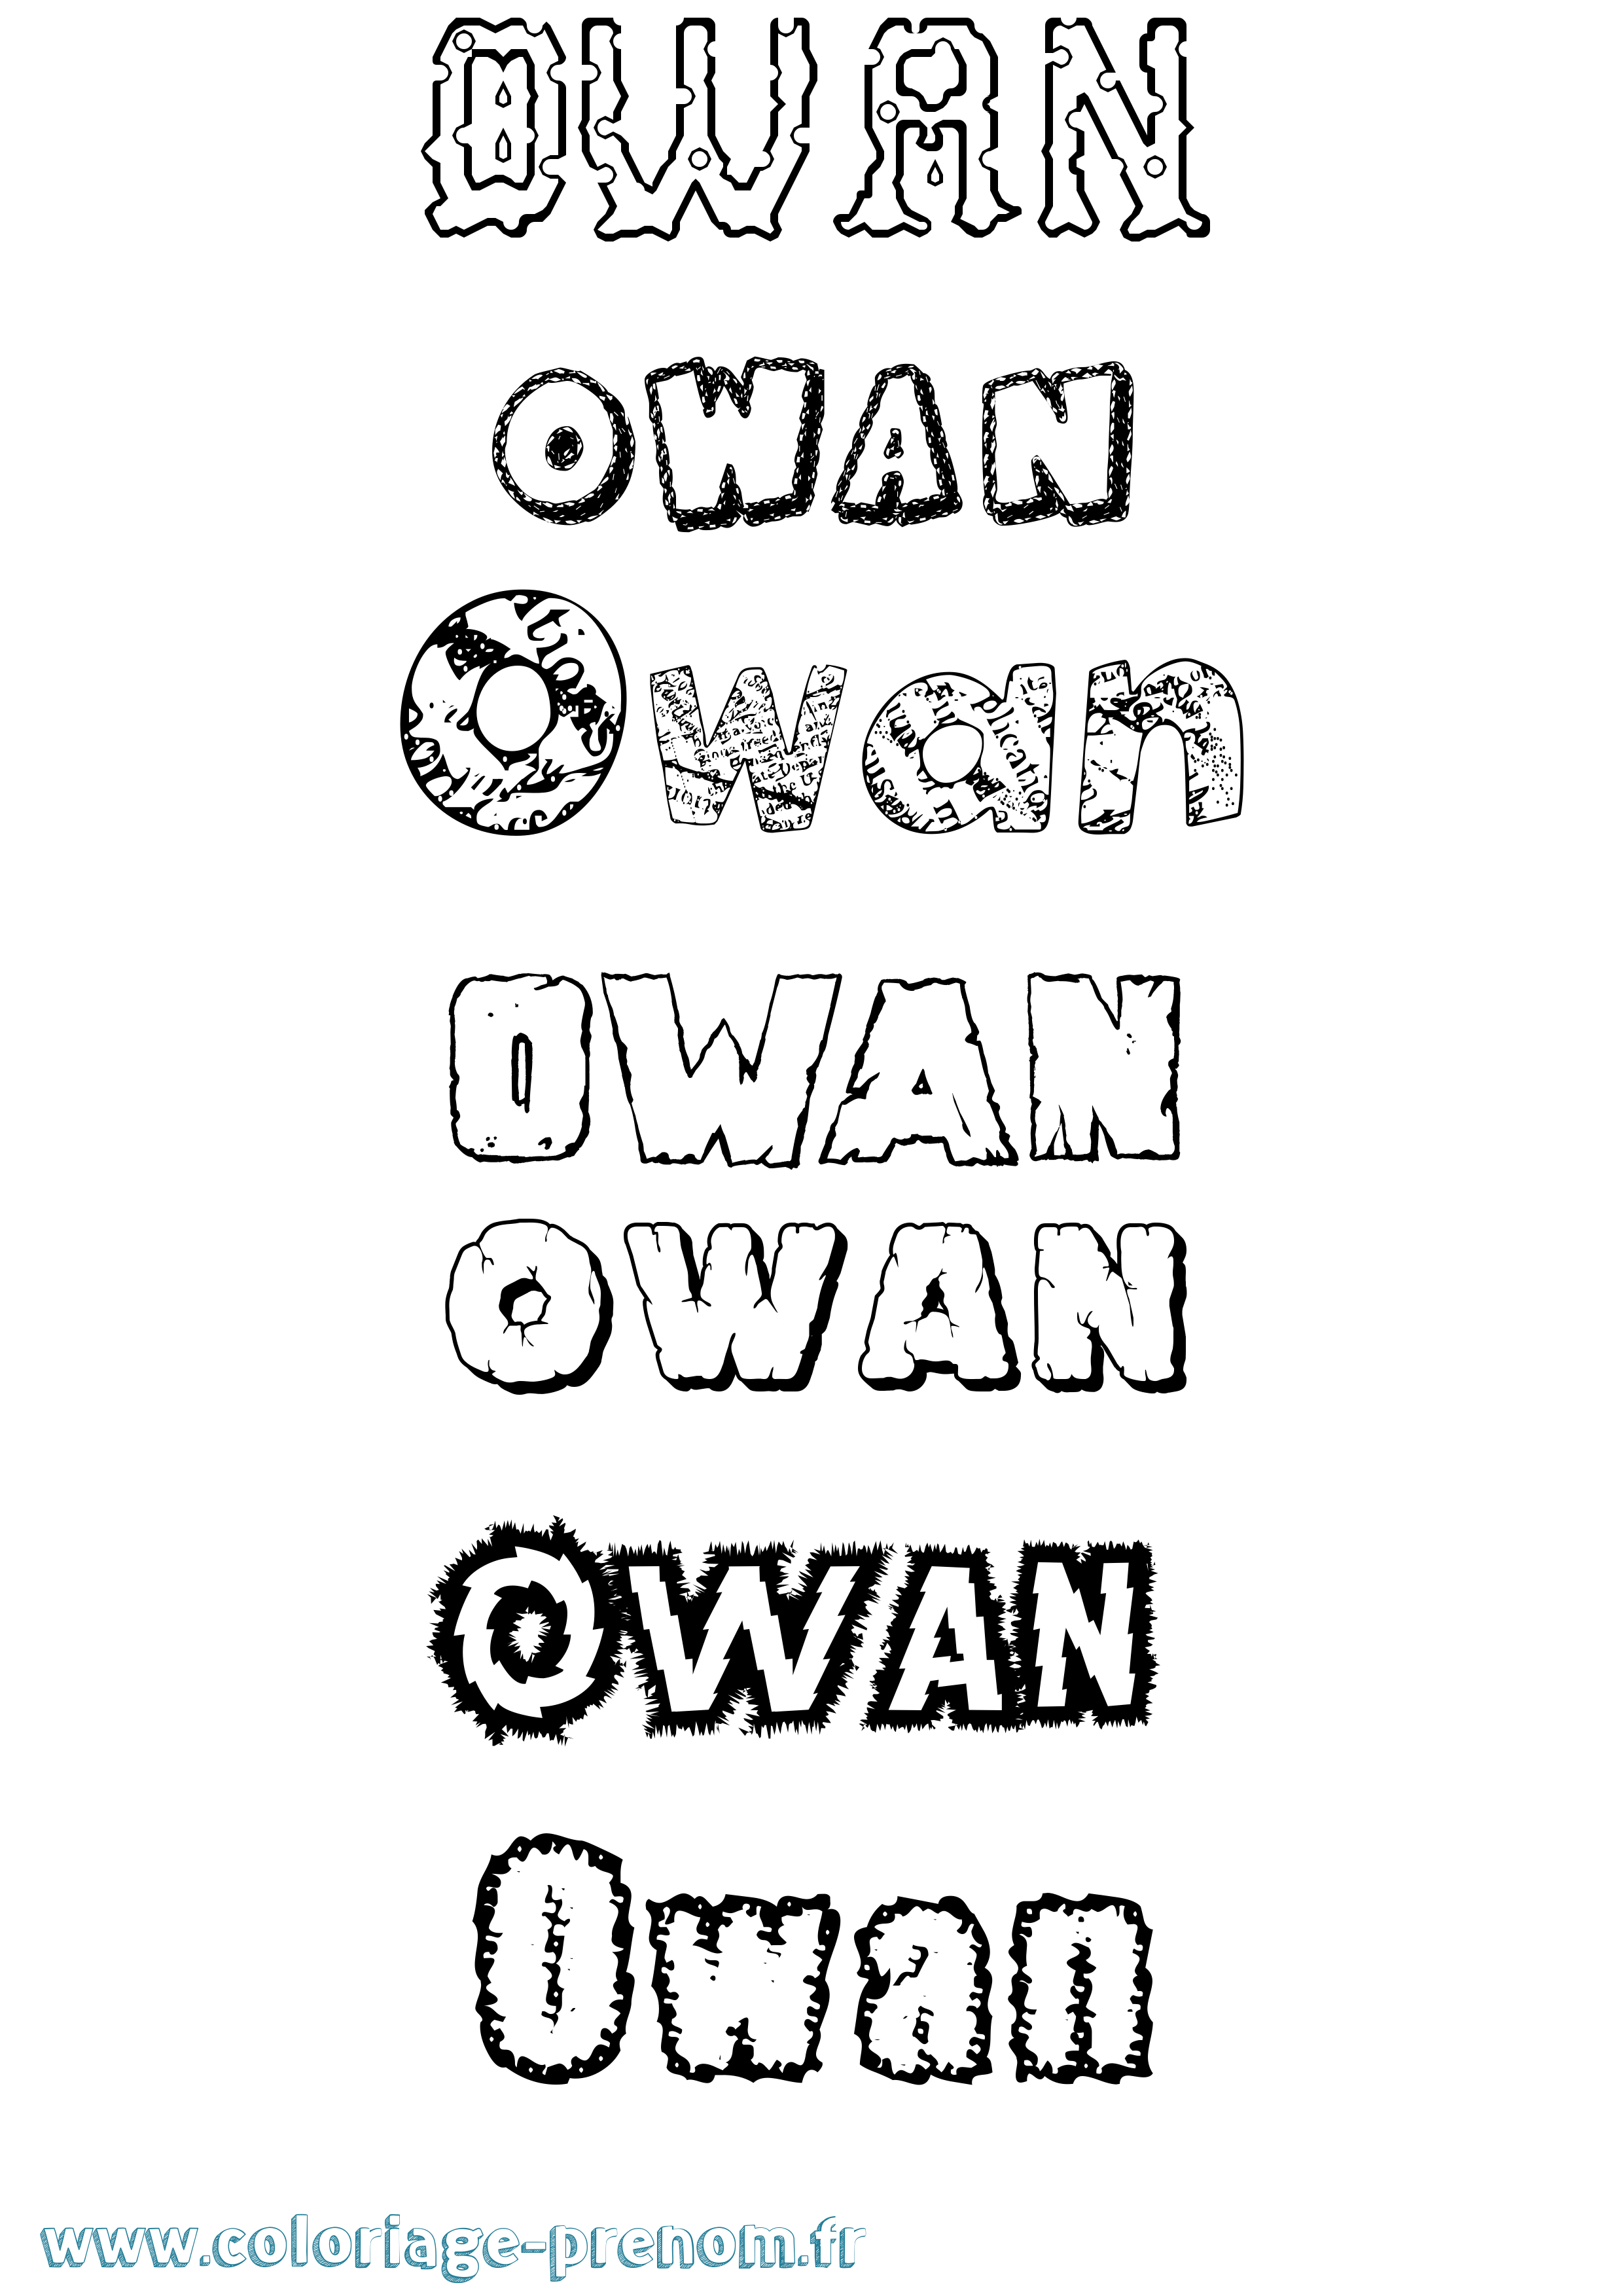 Coloriage prénom Owan Destructuré